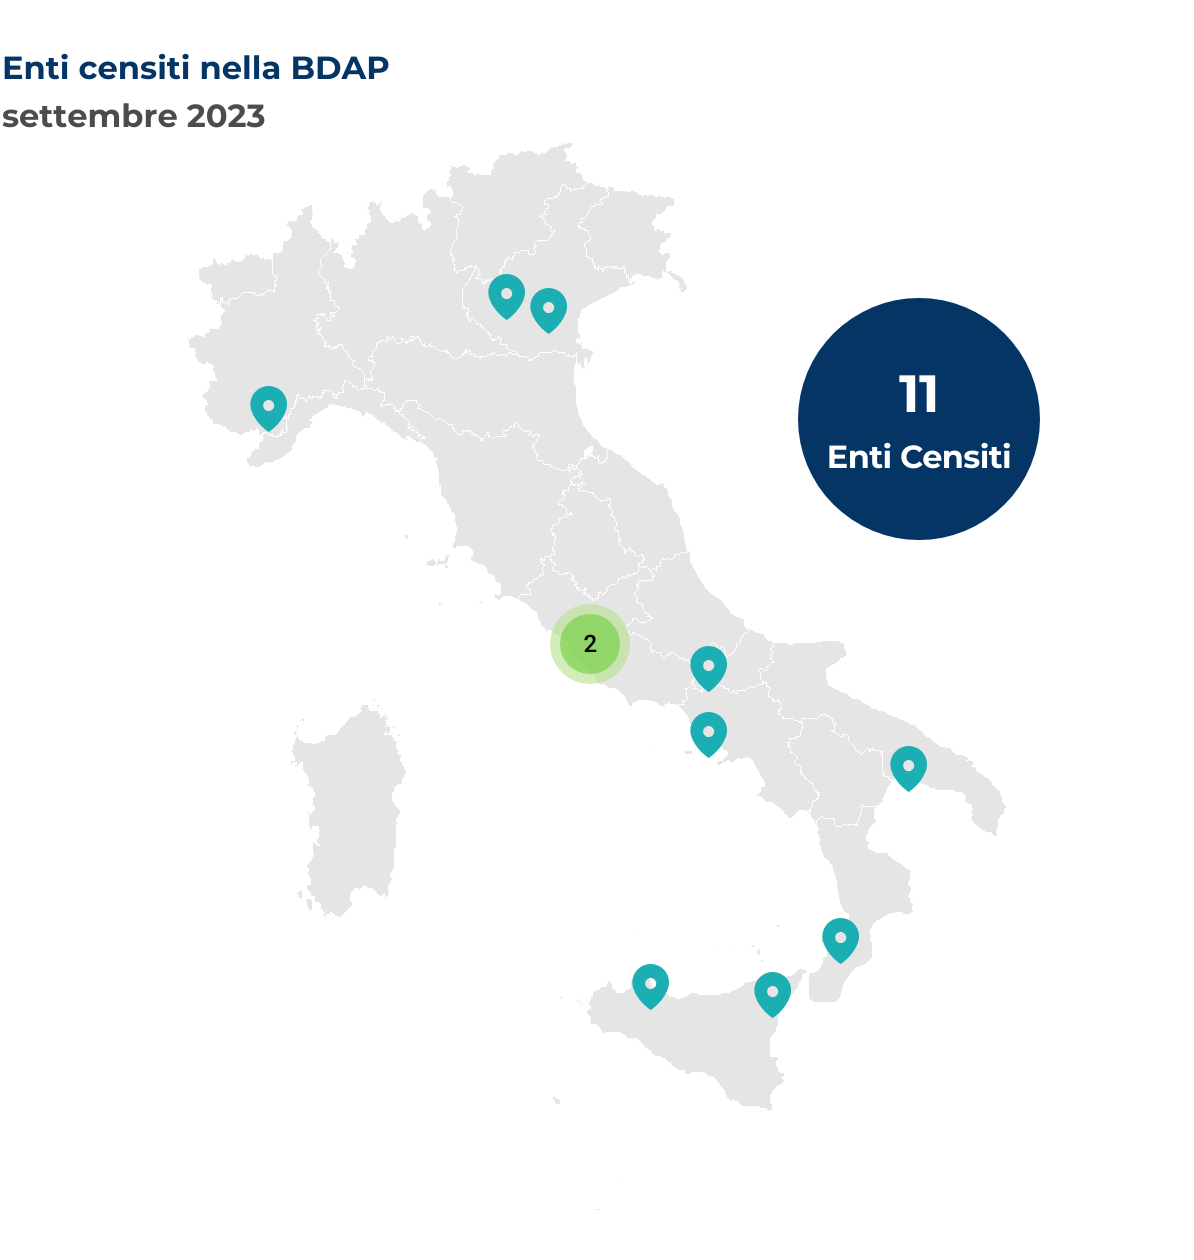 Mappa dell'Italia che mostra la localizzazione degli enti censiti nella BDAP. Nel mese di settembre 2023 sono stati censiti 11 nuovi enti così distribuiti per regione: Calabria 1 ente, Campania 1 ente, Lazio 2 enti, Molise 1 ente, Piemonte 1 ente, Puglia 1 ente, Sicilia 2 enti, Veneto 2 enti.